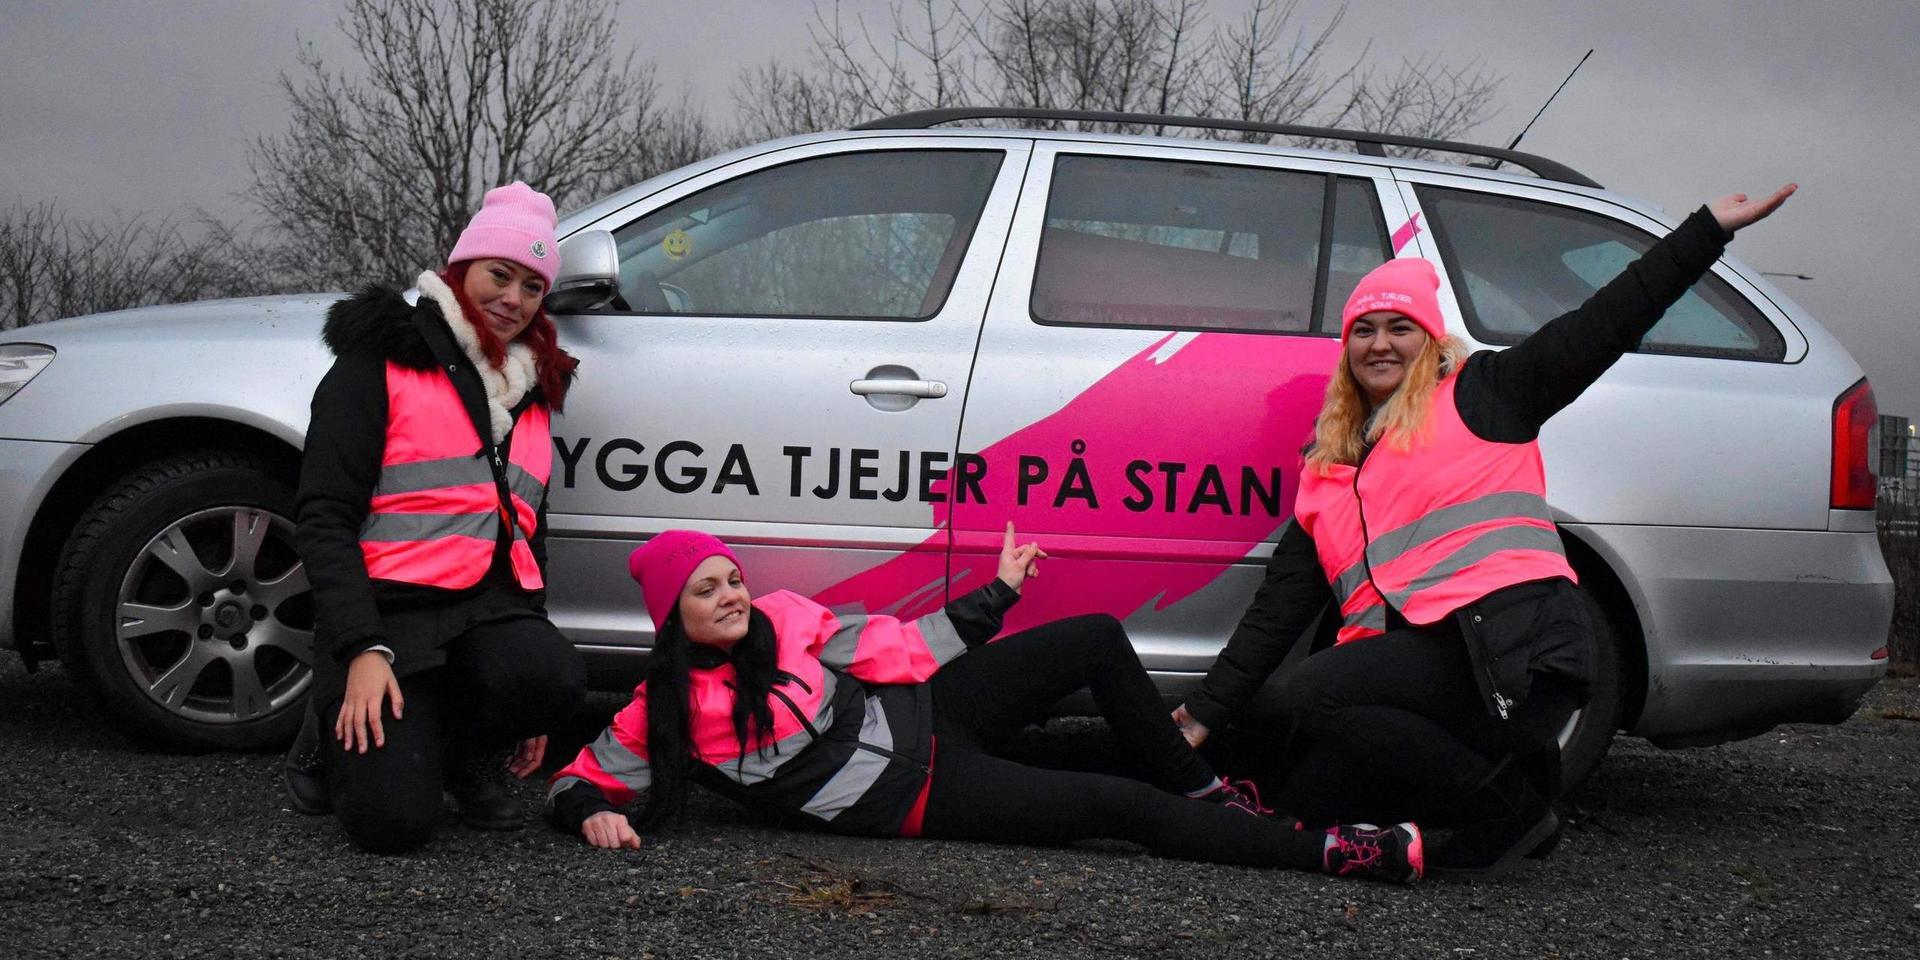 Stephanie Andersson, Malina Pieczywek och Selma Cirkic hjälper tjejer att känna sig trygga på stan. Foto: Trygga Tjejer på Stan.